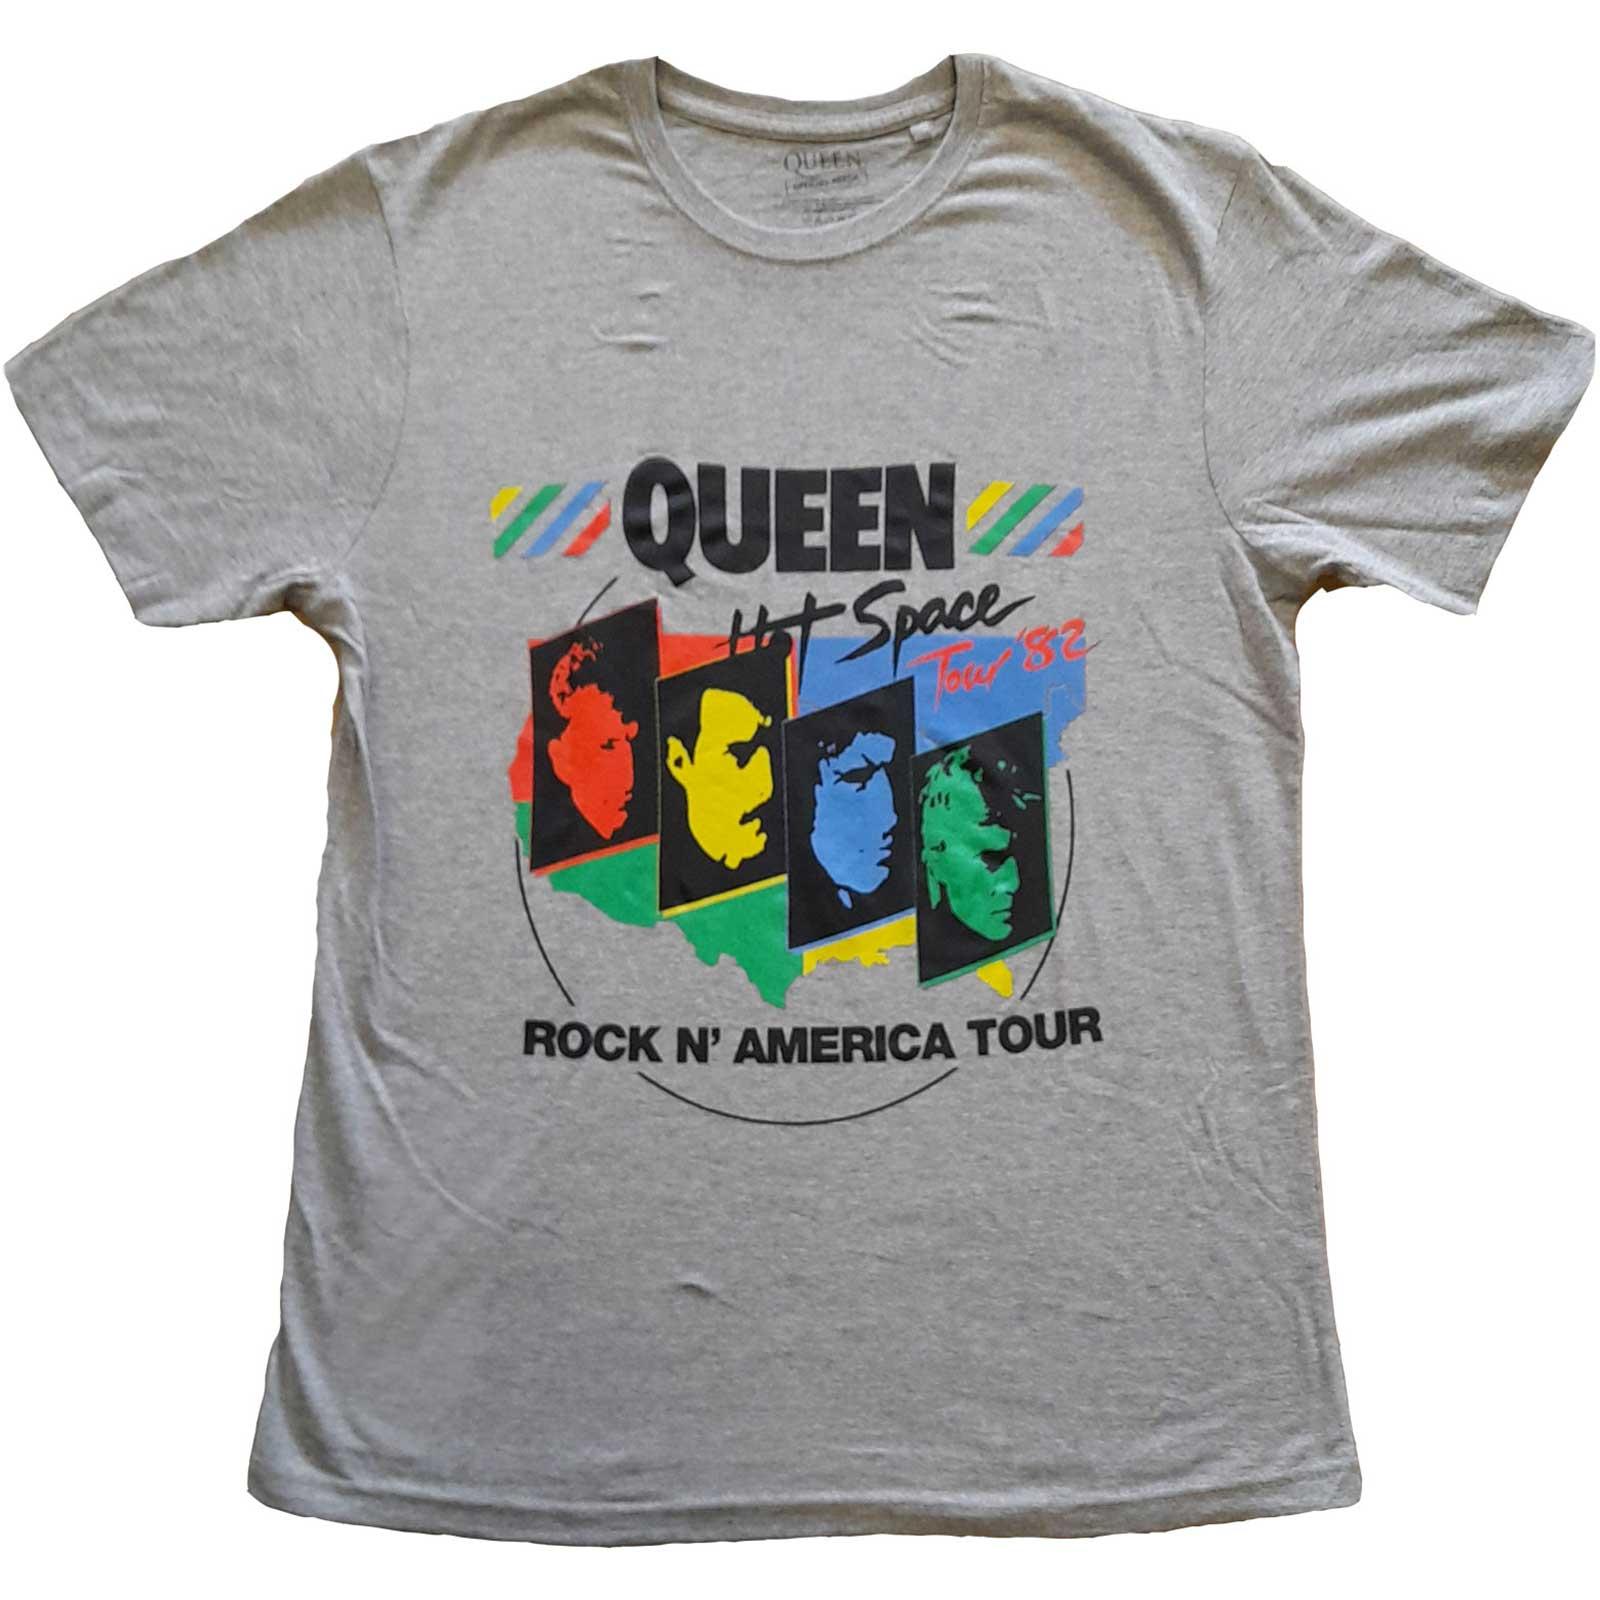 (クイーンズ・オブ・ザ・ストーン・エイジ) Queens Of The Stone Age オフィシャル商品 ユニセックス Back Chat Tシャツ コットン 半袖 トップス 【海外通販】